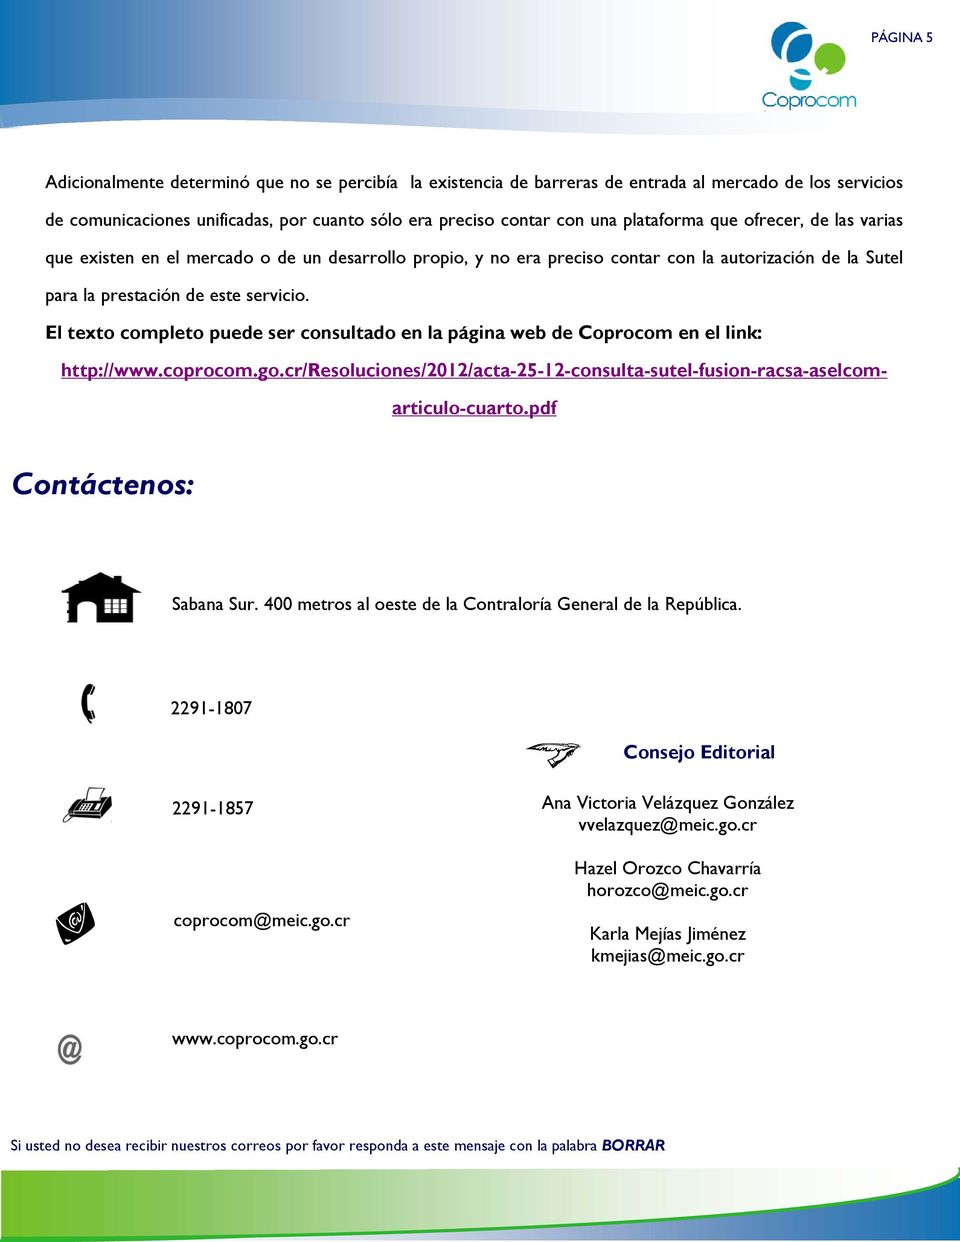 El texto completo puede ser consultado en la página web de Coprocom en el link: http://www.coprocom.go.cr/resoluciones/2012/acta-25-12-consulta-sutel-fusion-racsa-aselcomarticulo-cuarto.